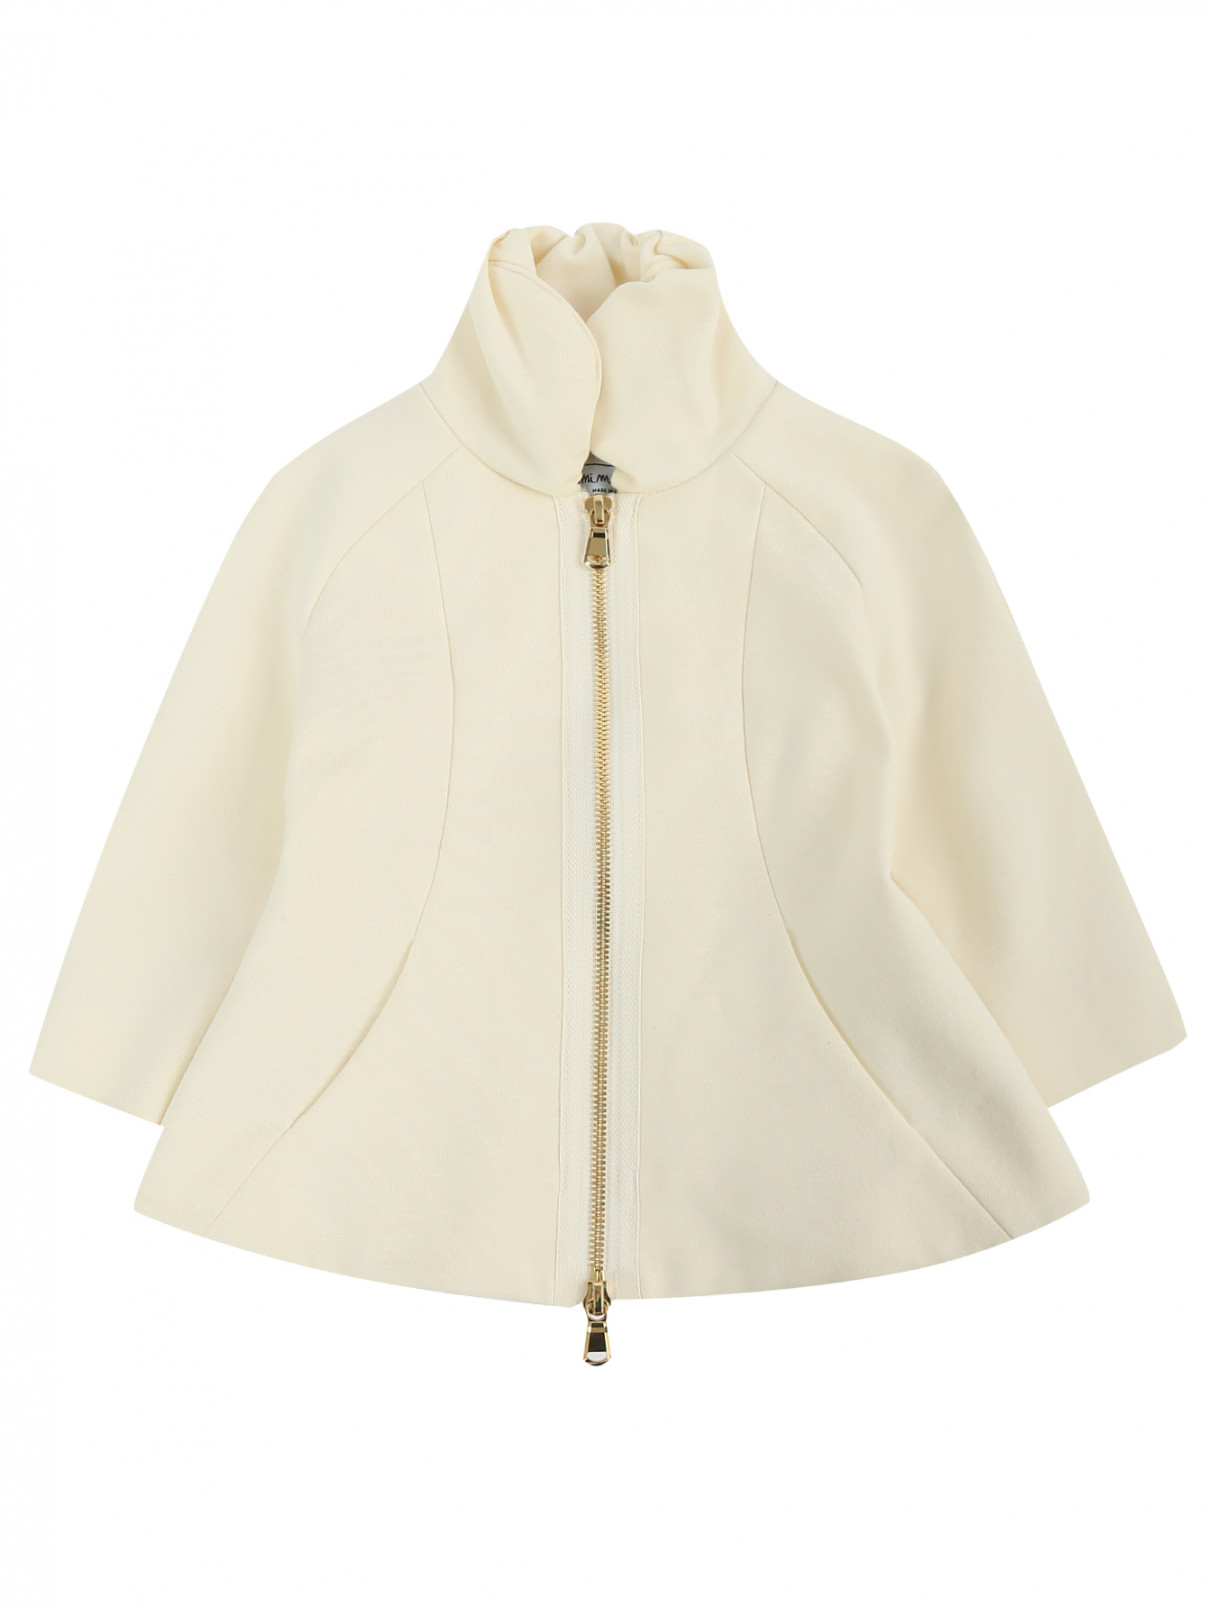 Приталенная курточка на молнии MiMiSol  –  Общий вид  – Цвет:  Белый